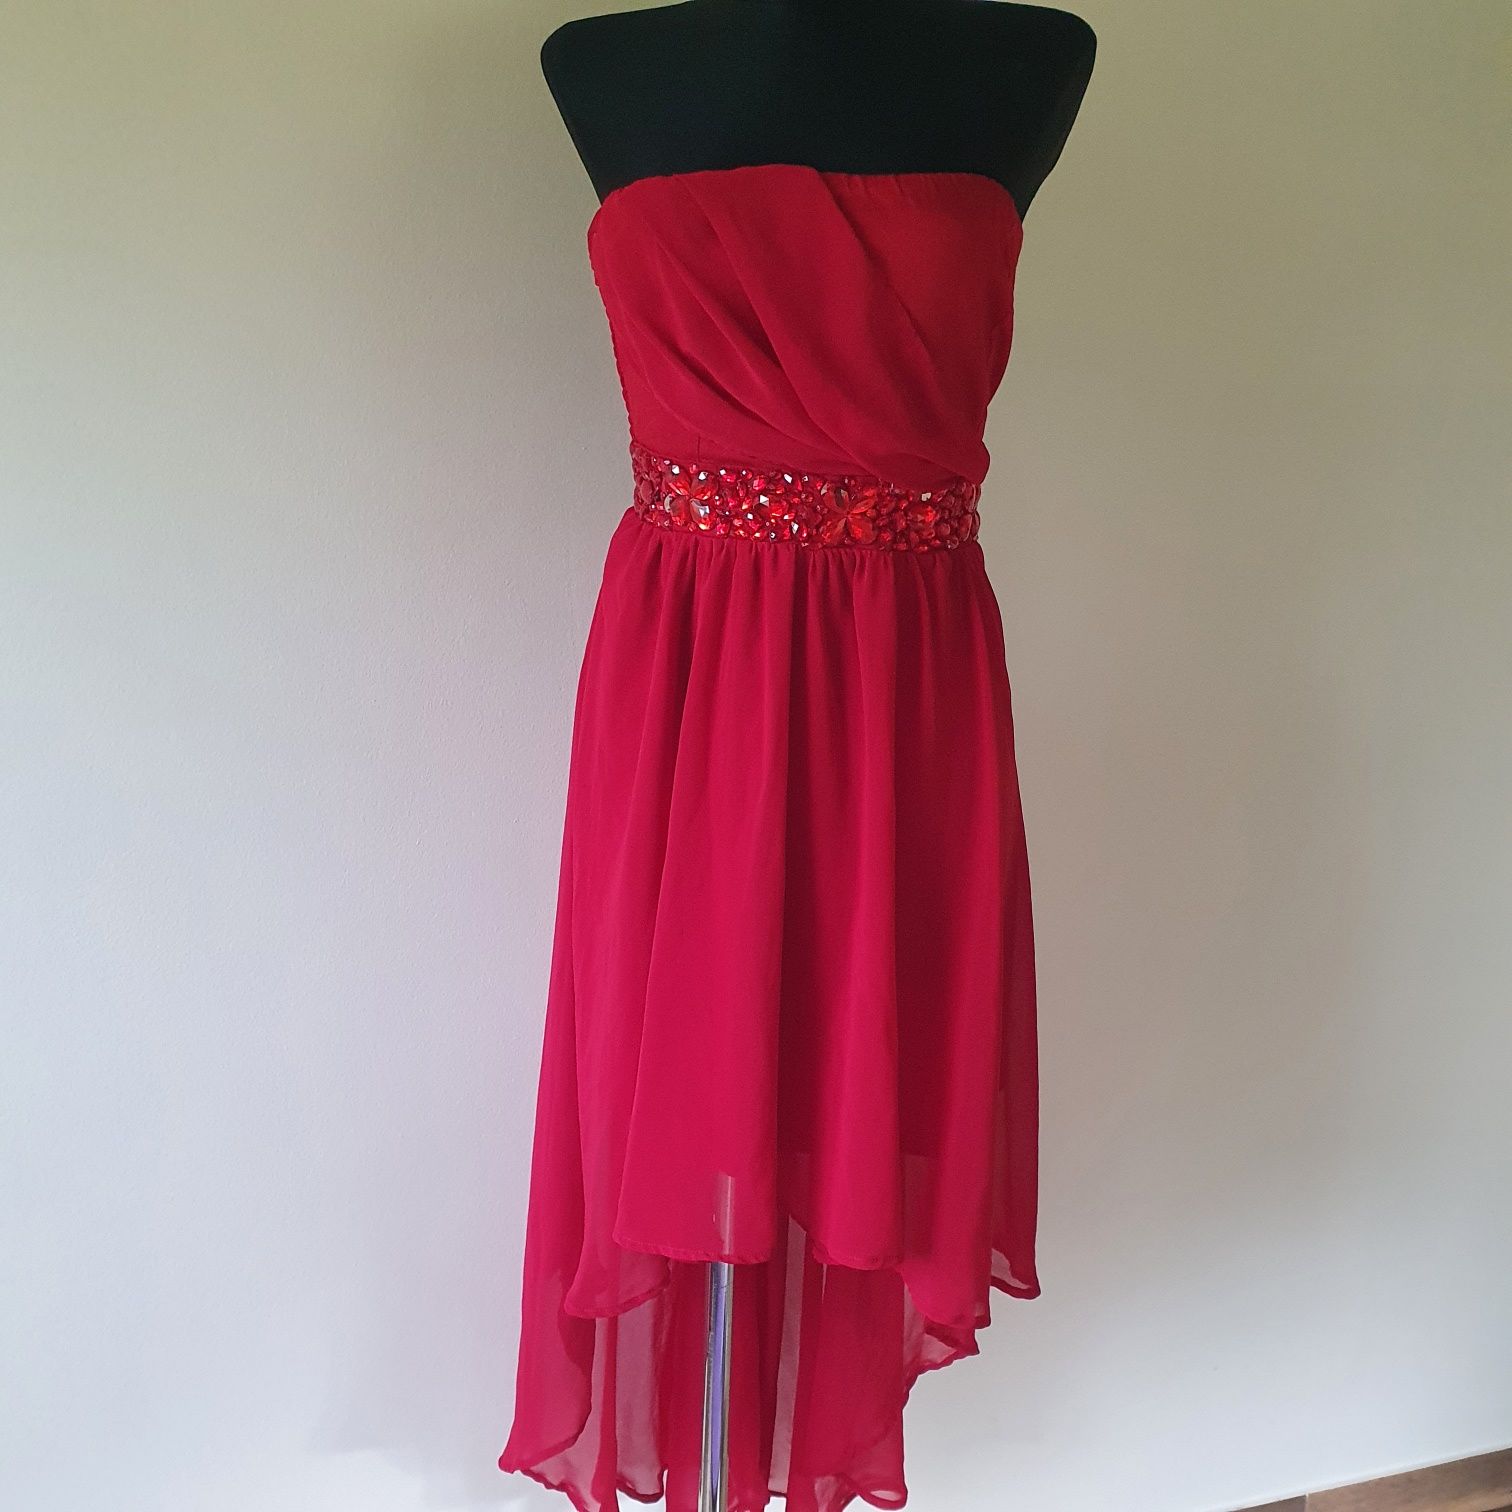 Fantastyczna, asymetryczna czerwona sukienka